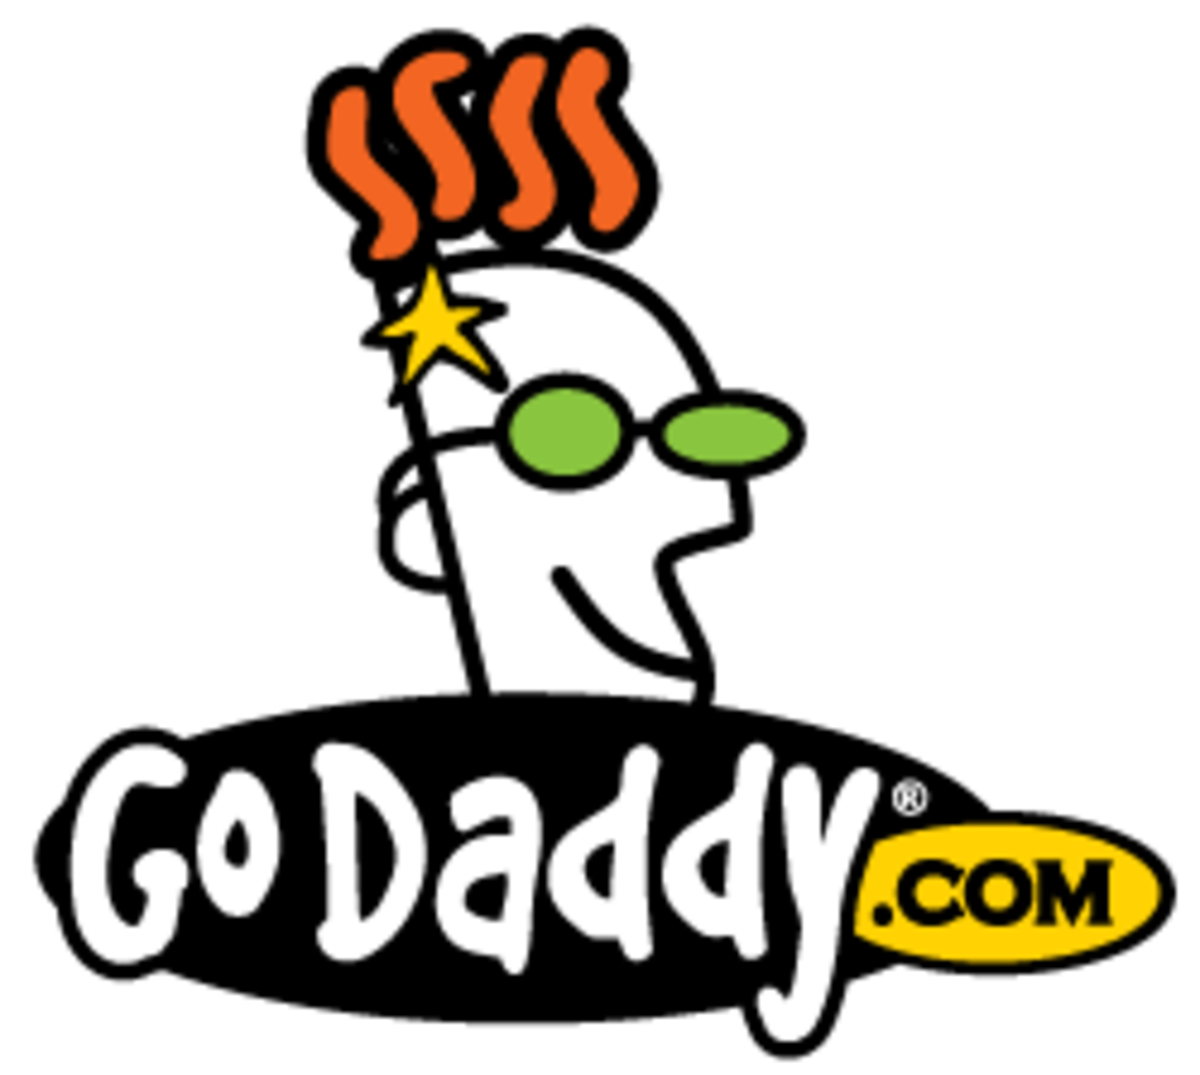 The Best Sites Like GoDaddy